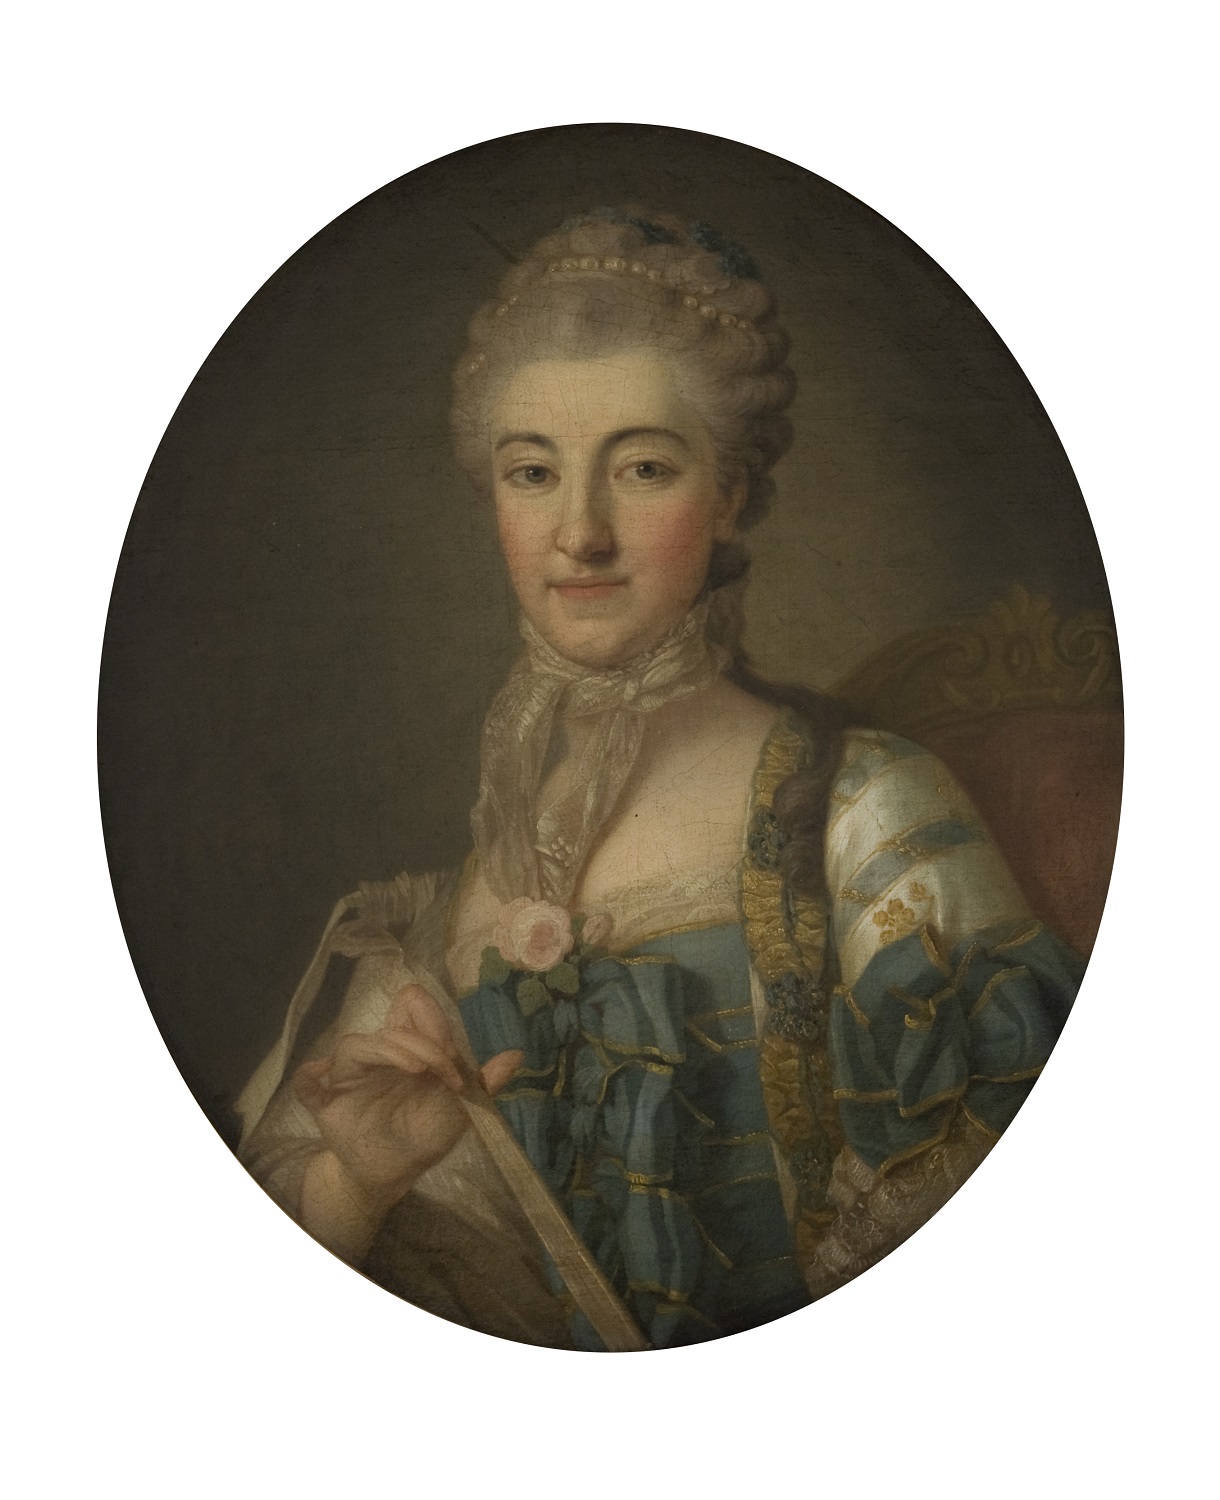 Portret Izabeli z Poniatowskich Branickiej